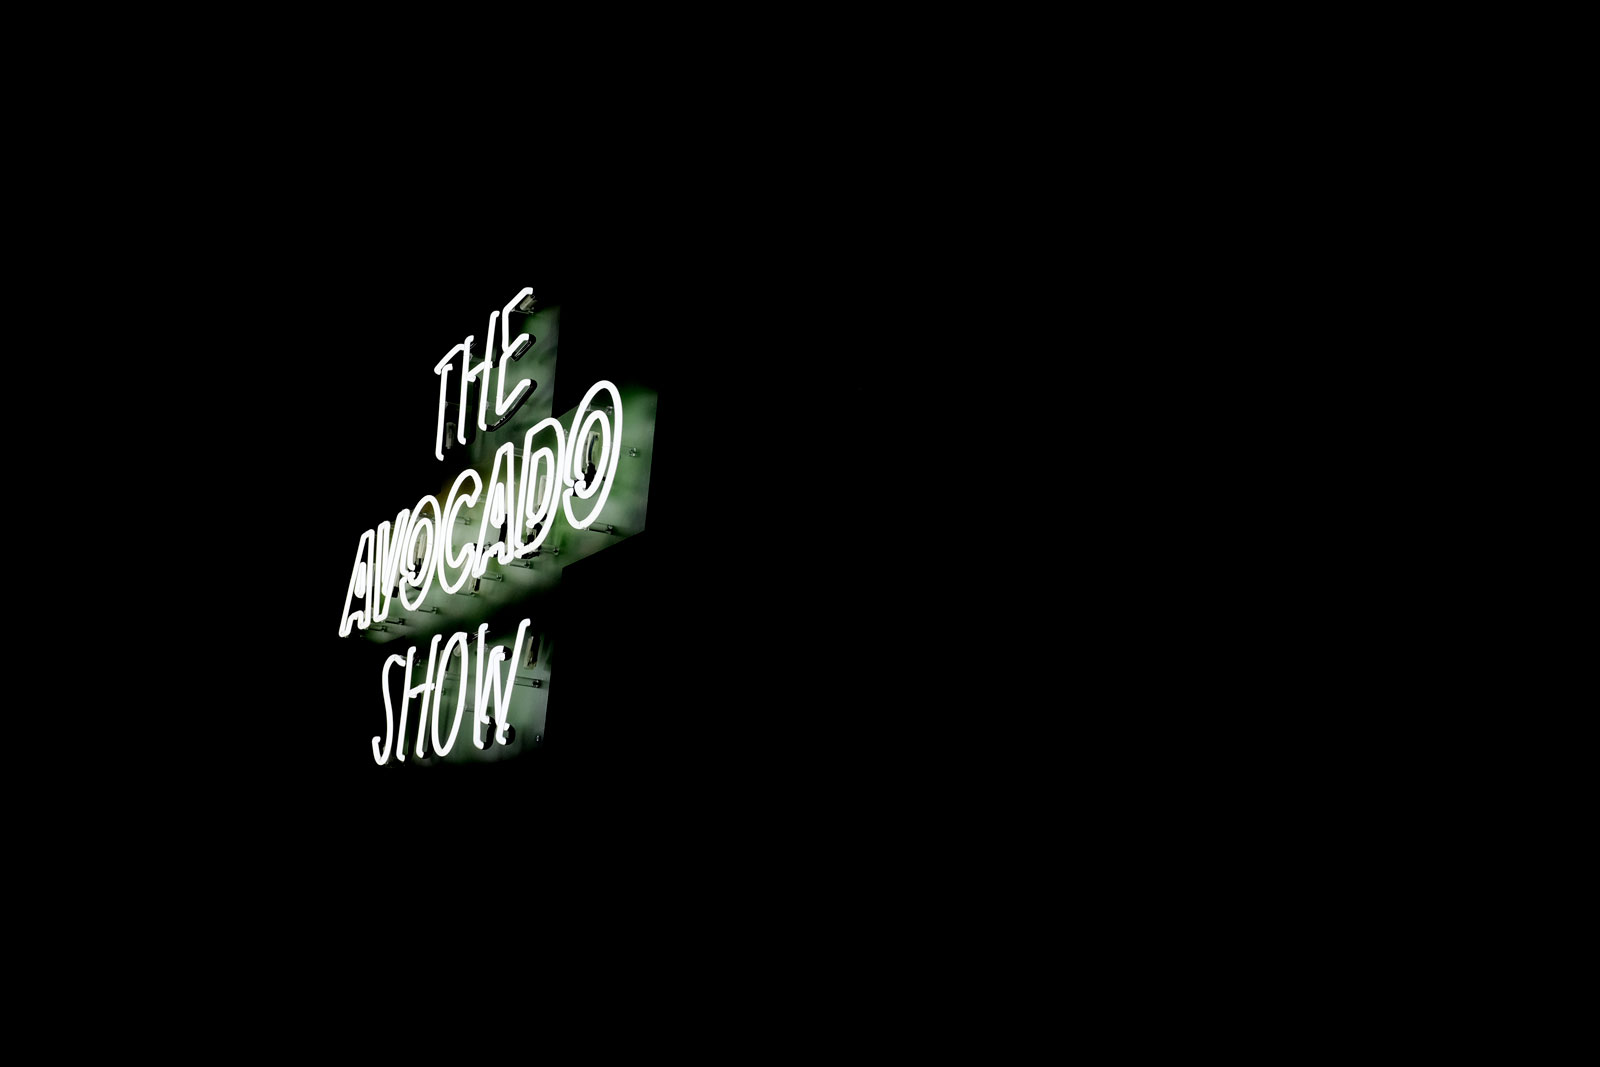 "The Avocado Show" Neon sign